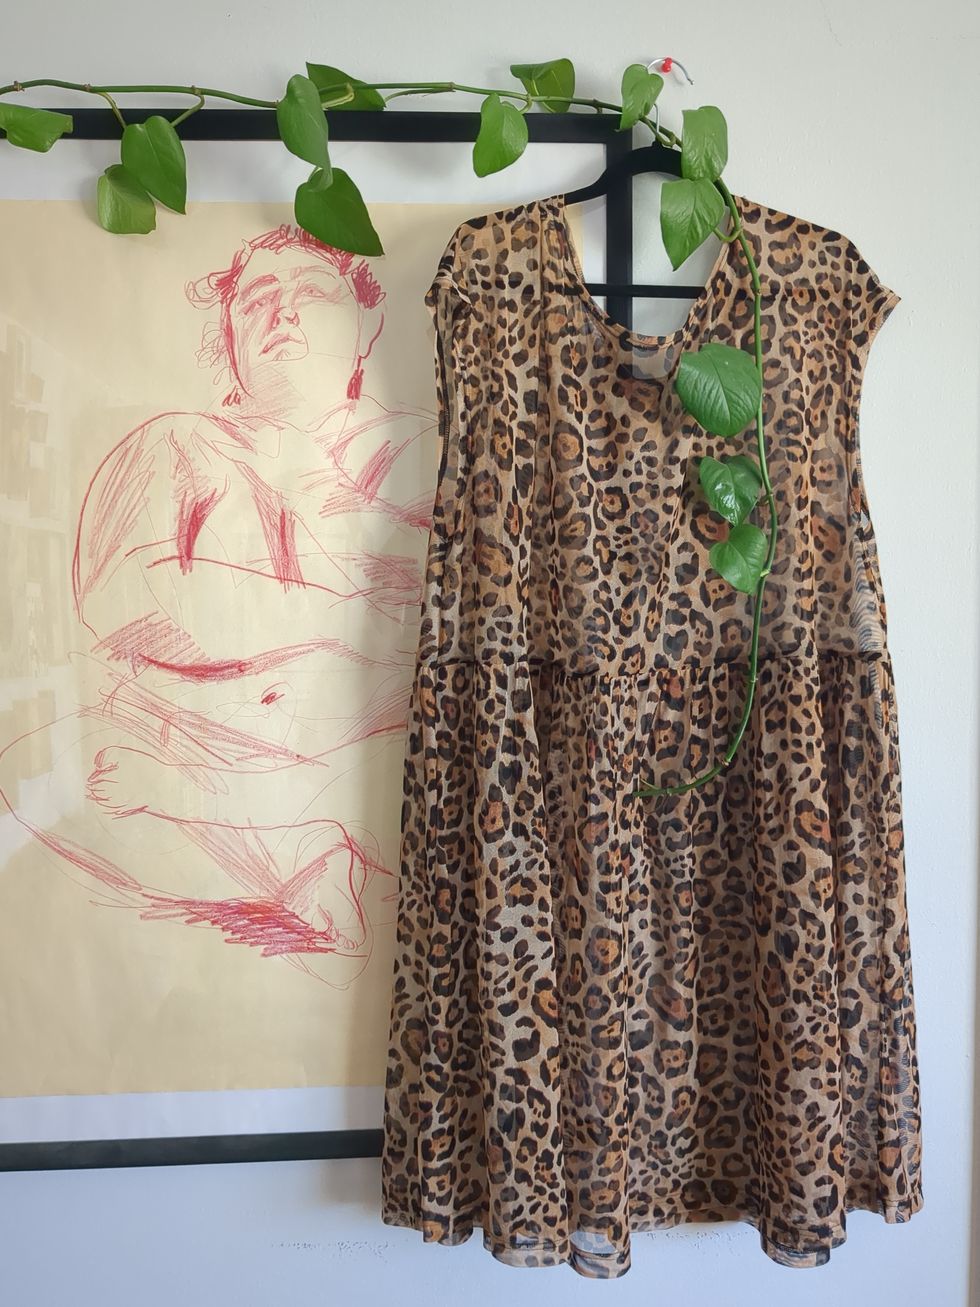 a leopard dress hanging next to artwork